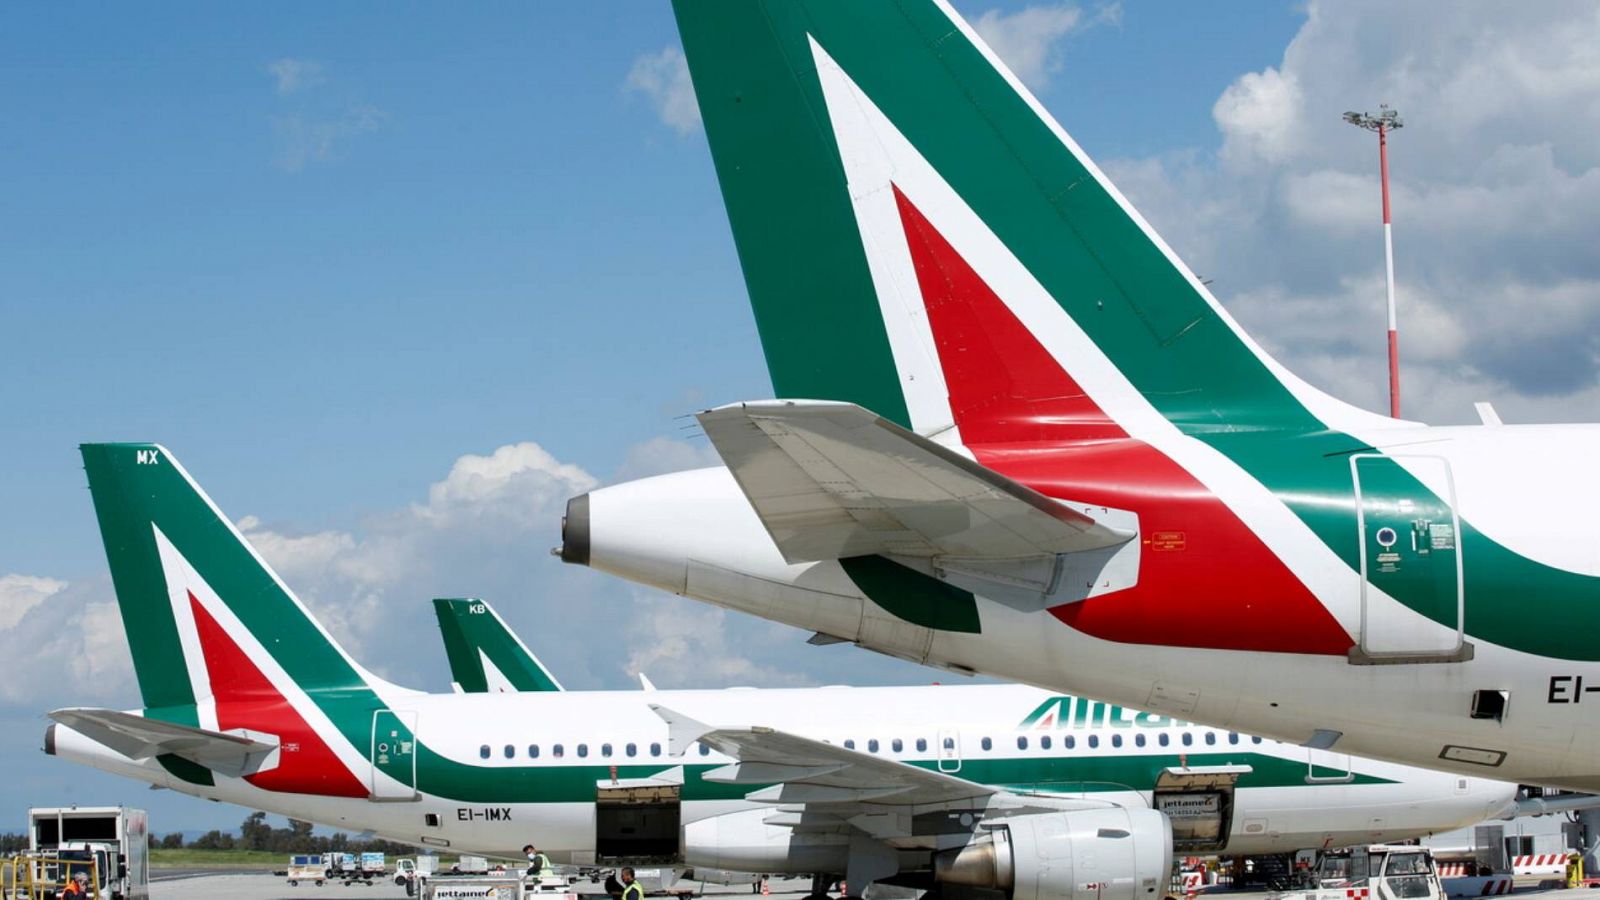 La compañía aérea Alitalia desaparece tras 74 años - RTVE.es